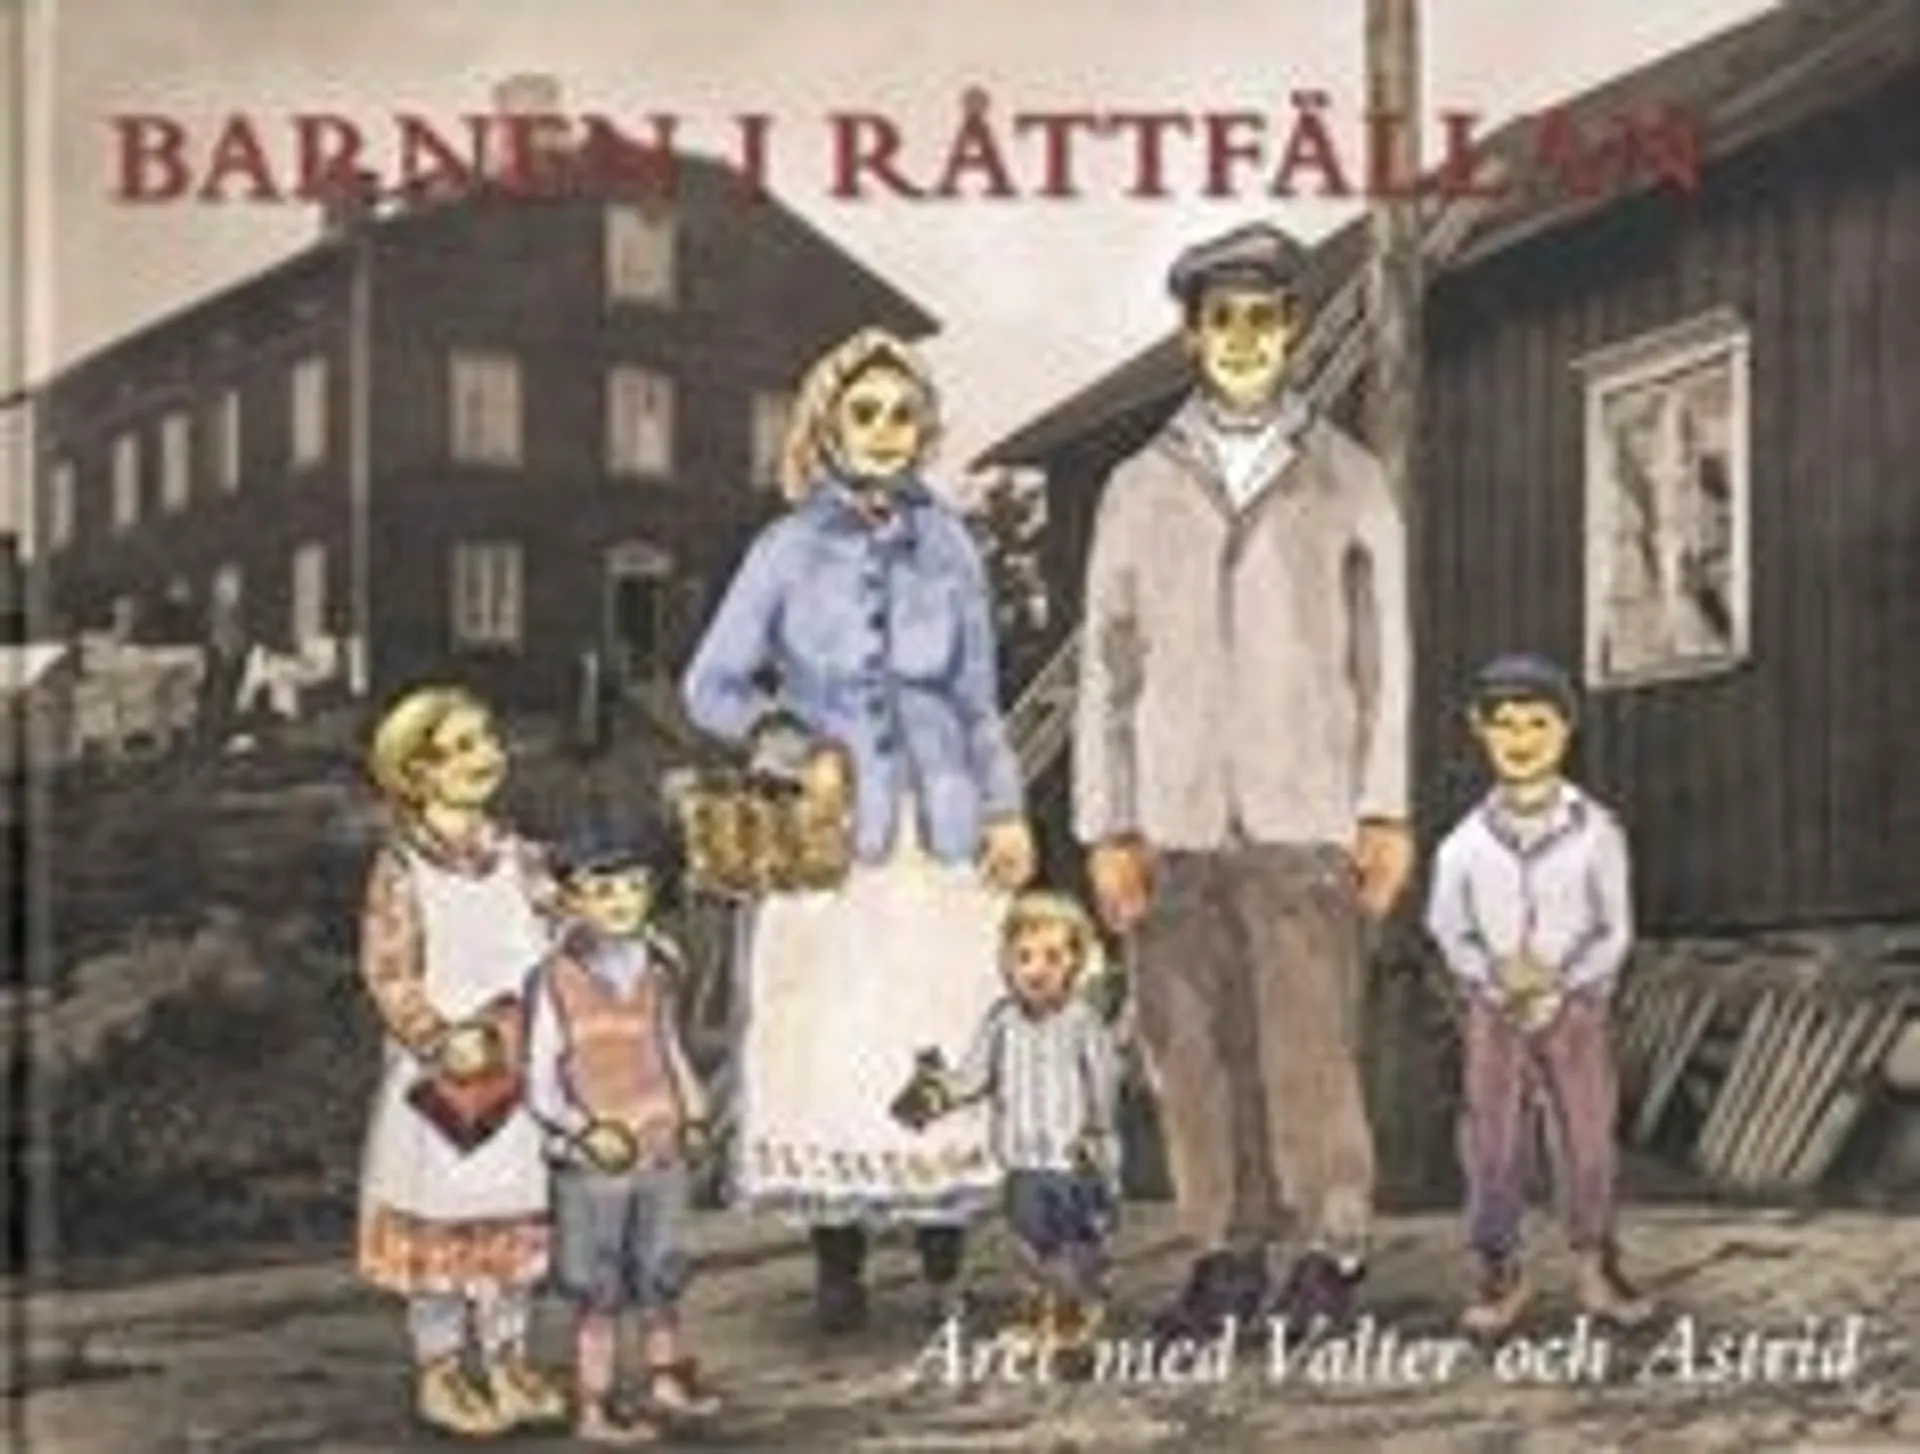 Slotte, Barnen i Råttfällan - året med Valter och Astrid